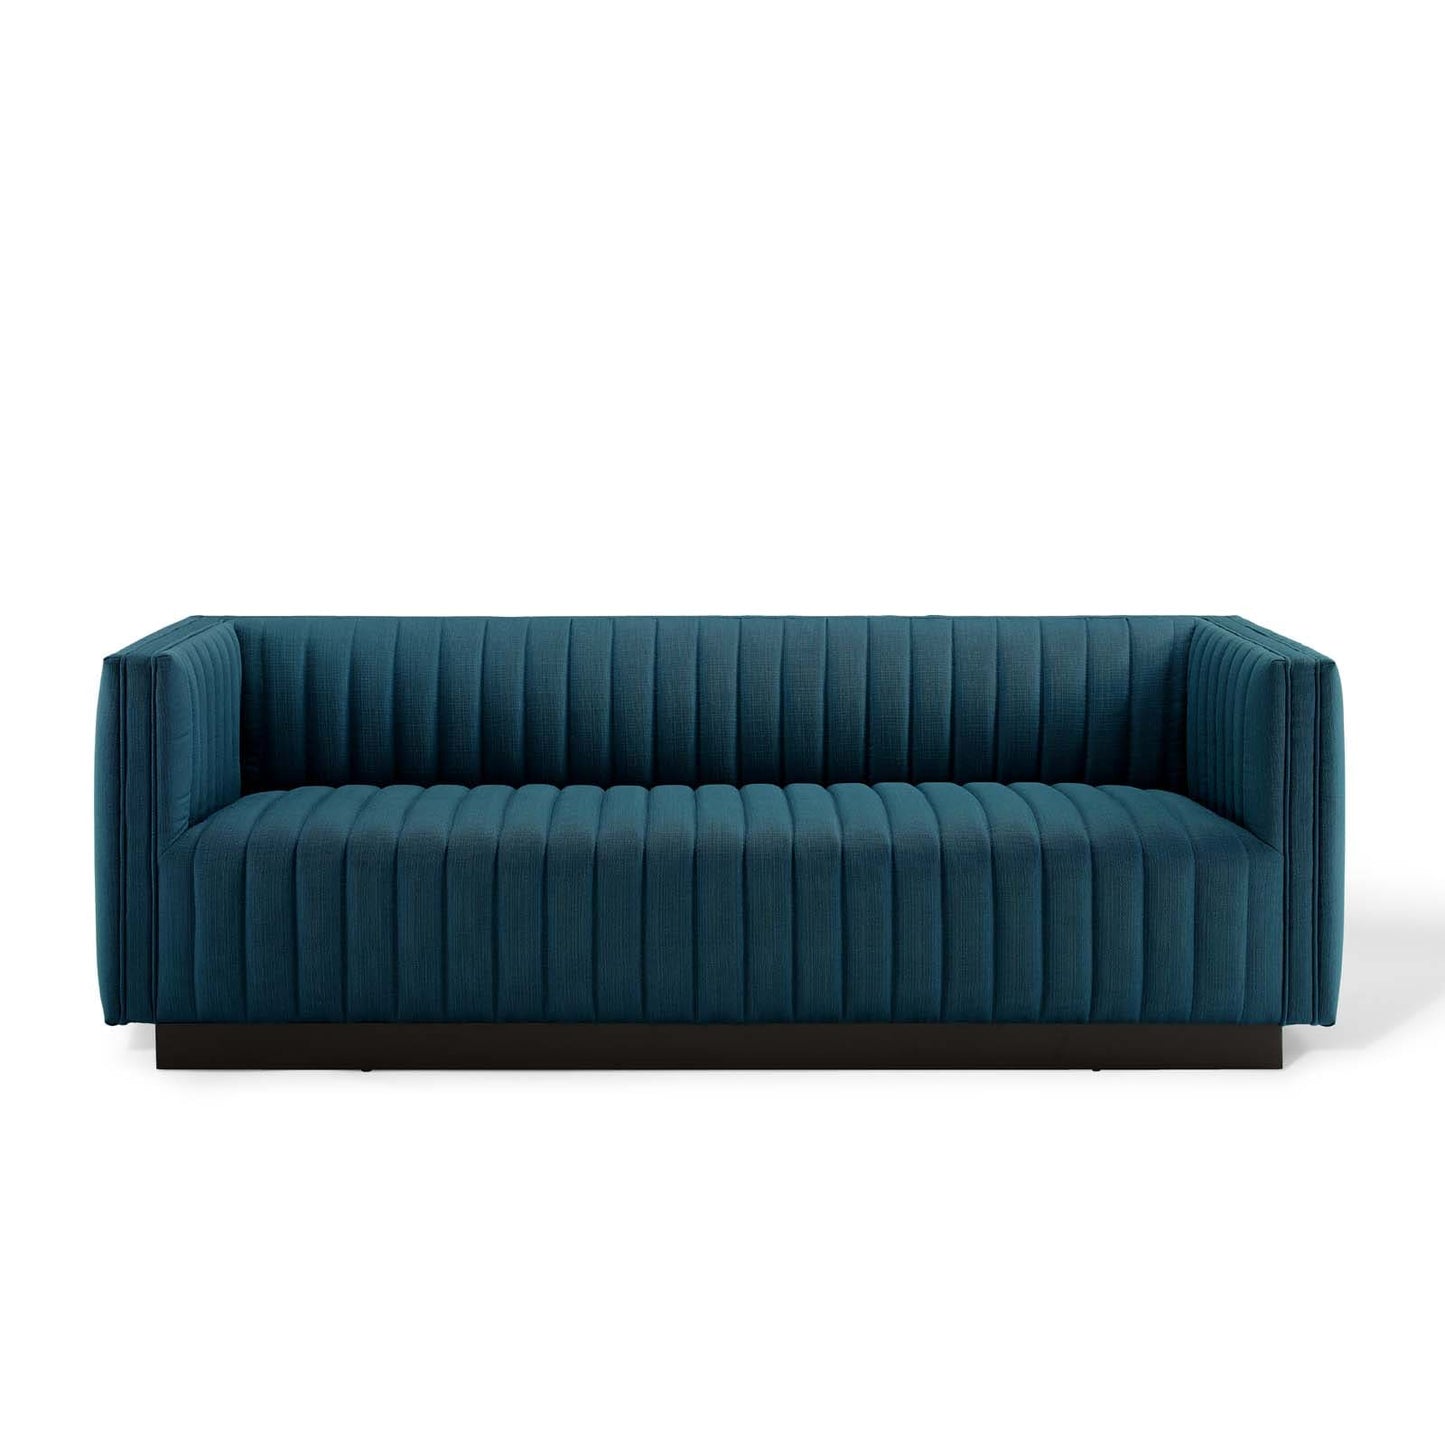 Modway Perception Tufted Upholstered Fabric Sofa | Sofas | Modishstore-8